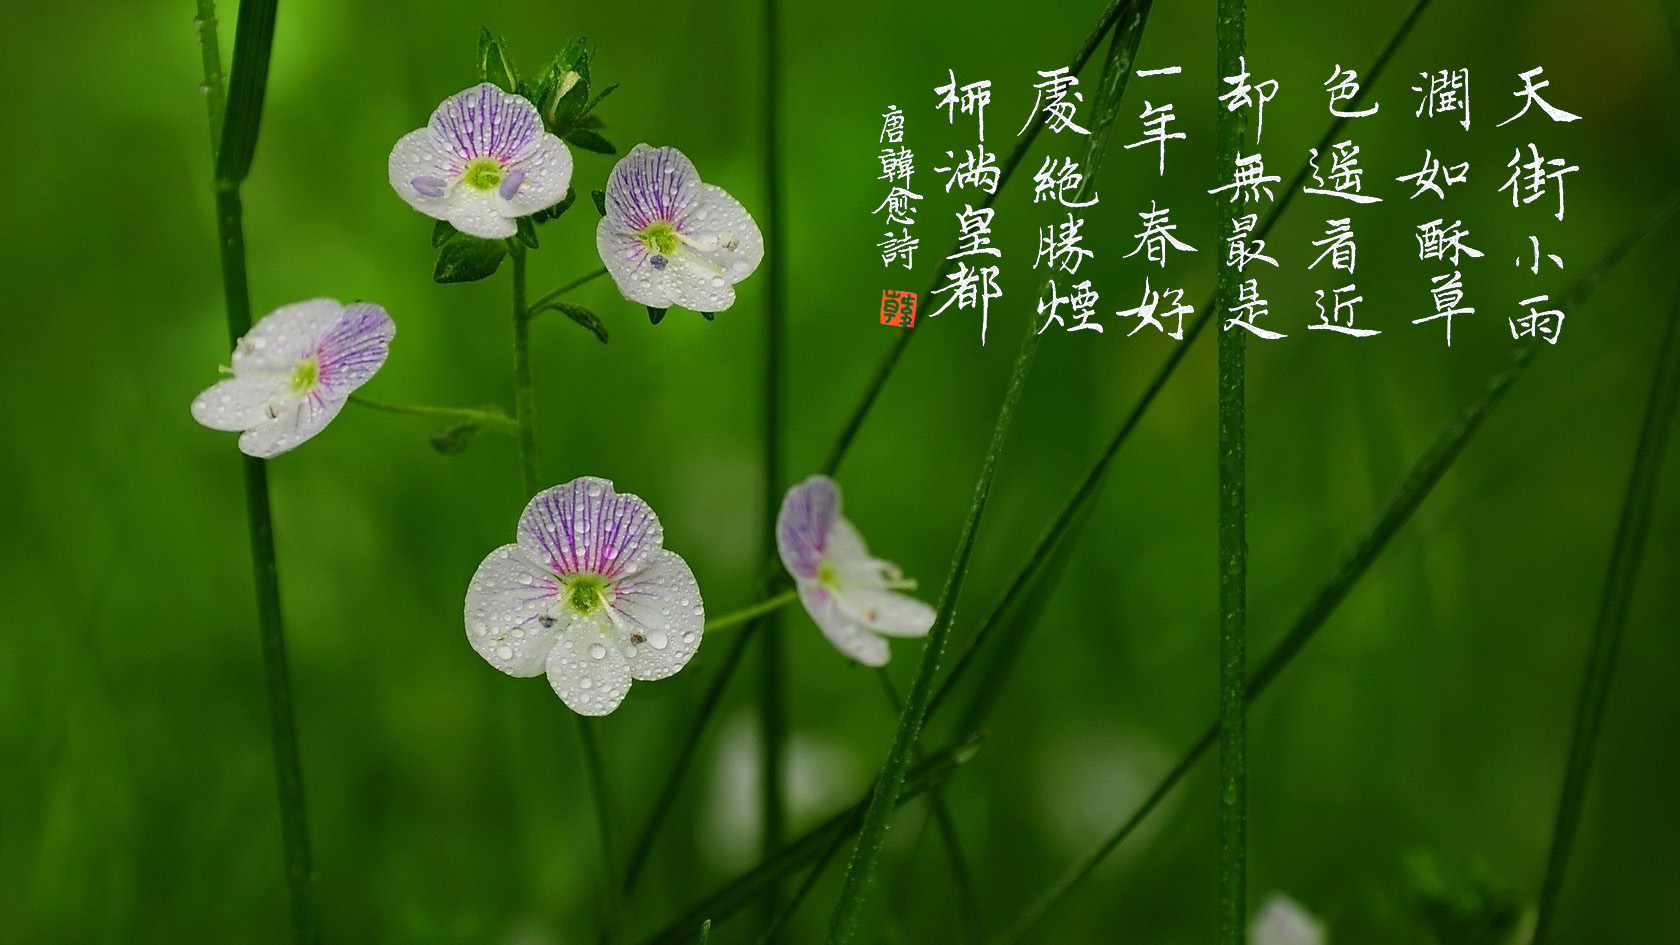 春节的由来、习俗和相关诗词